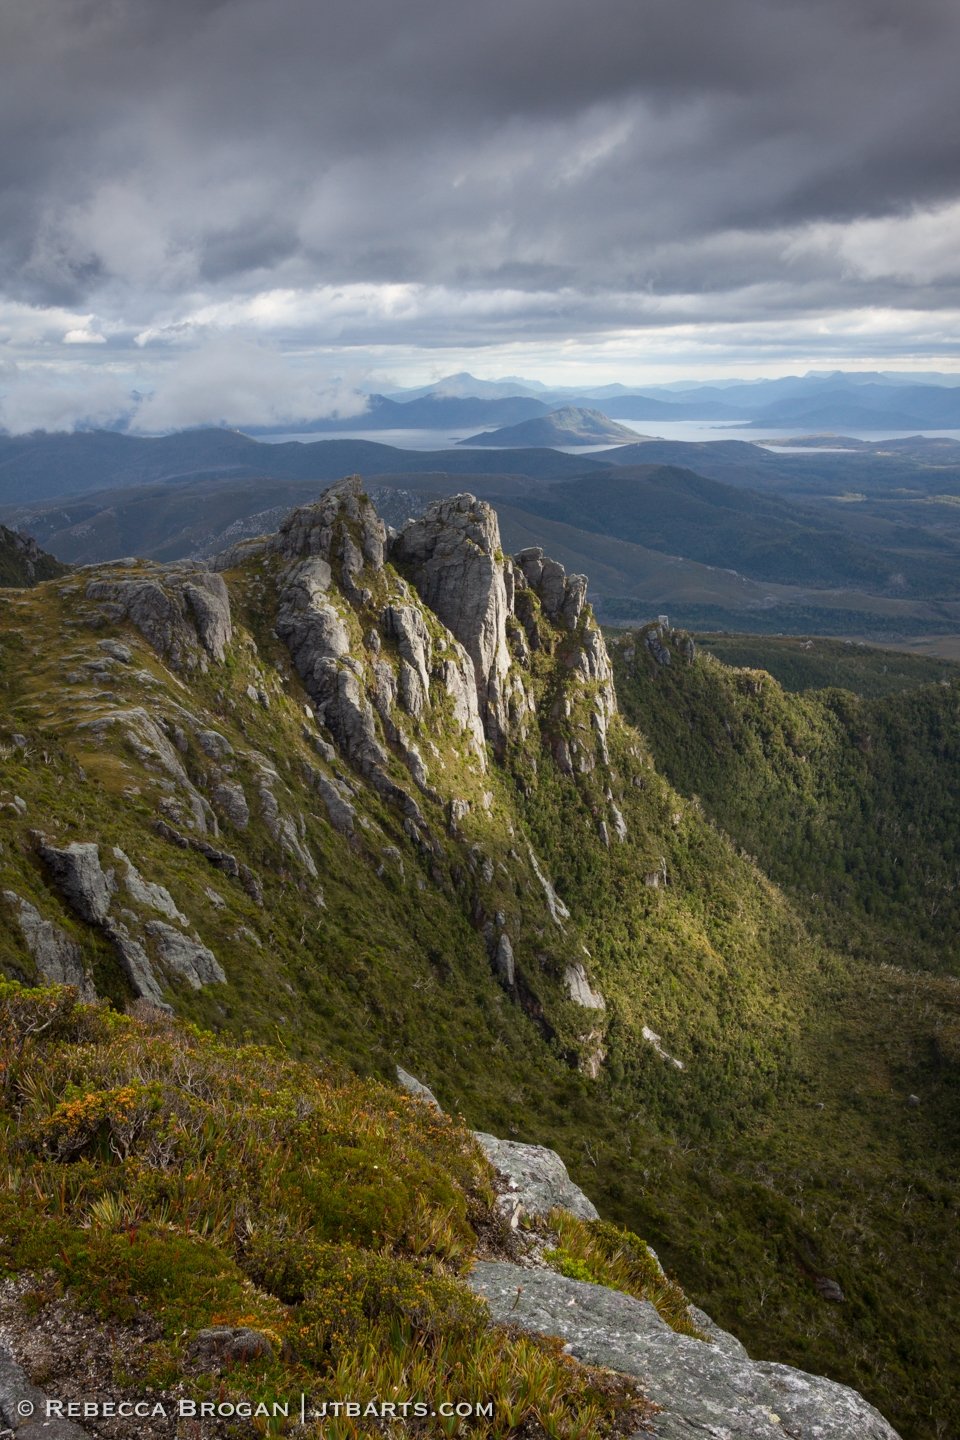 Western Arthurs Range, Southwest National Park, Tasmania